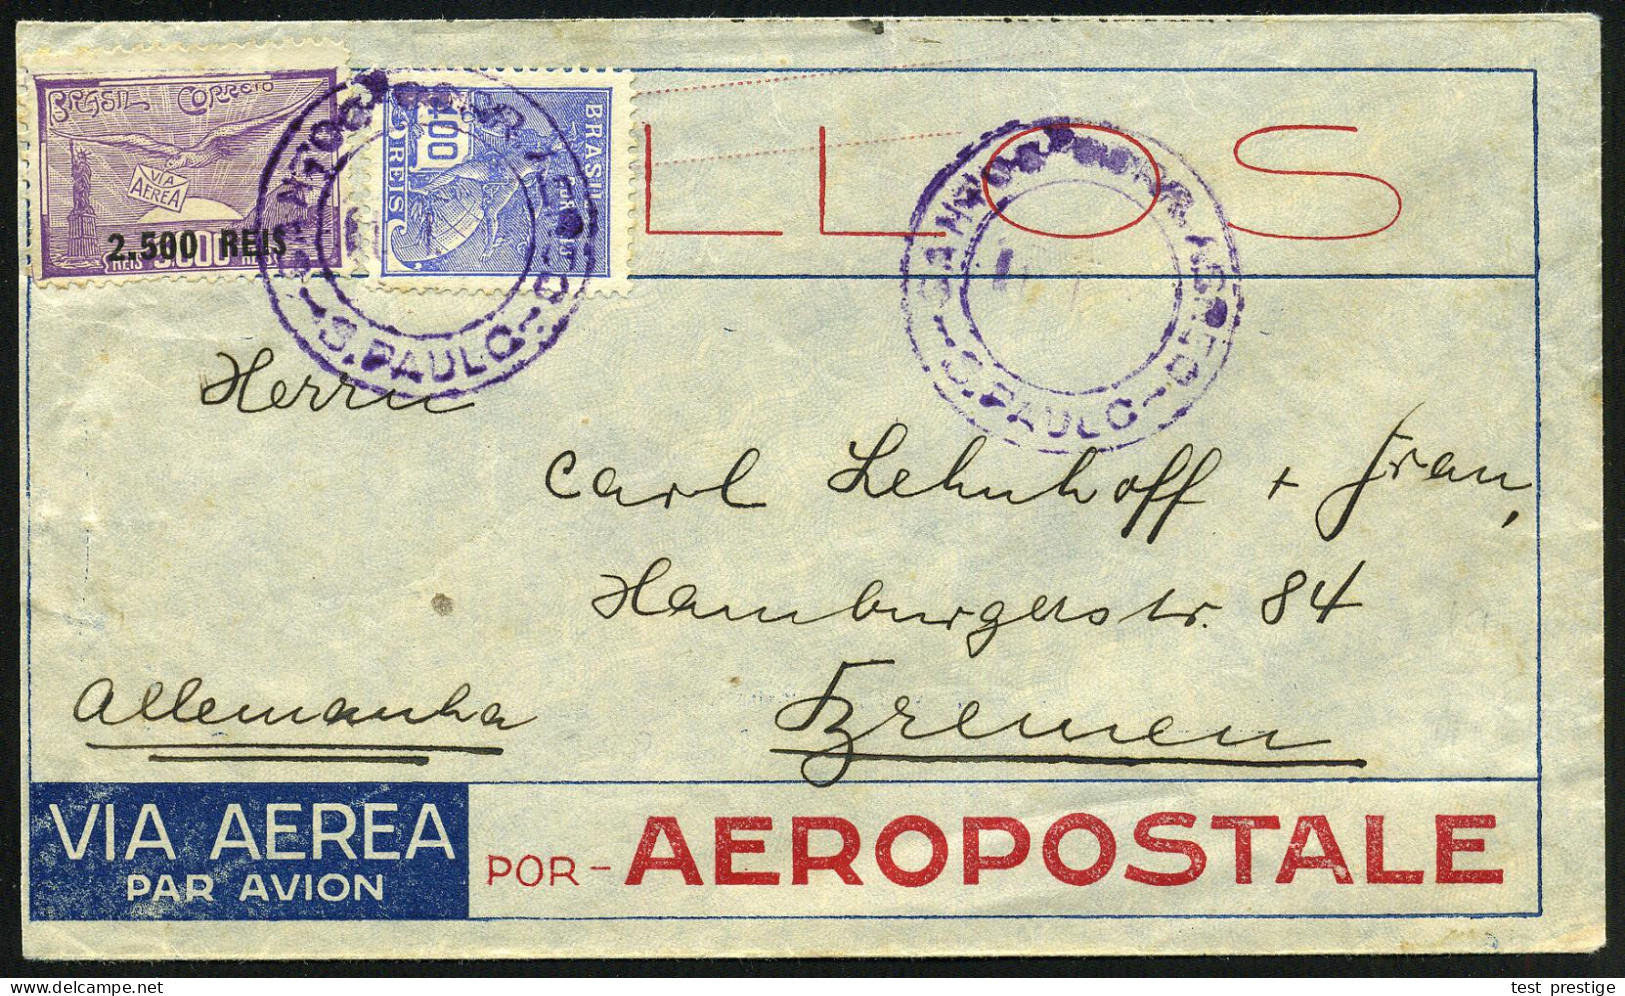 BRASILIEN 1932 (1.1.) Flp.-Provis. 2,500 R./3.000 R. U.a. (Mi.368 U.a.), Viol. 2K: S. PAULO , Vordruck-Bf.: VIA AEREA PO - Otros (Aire)